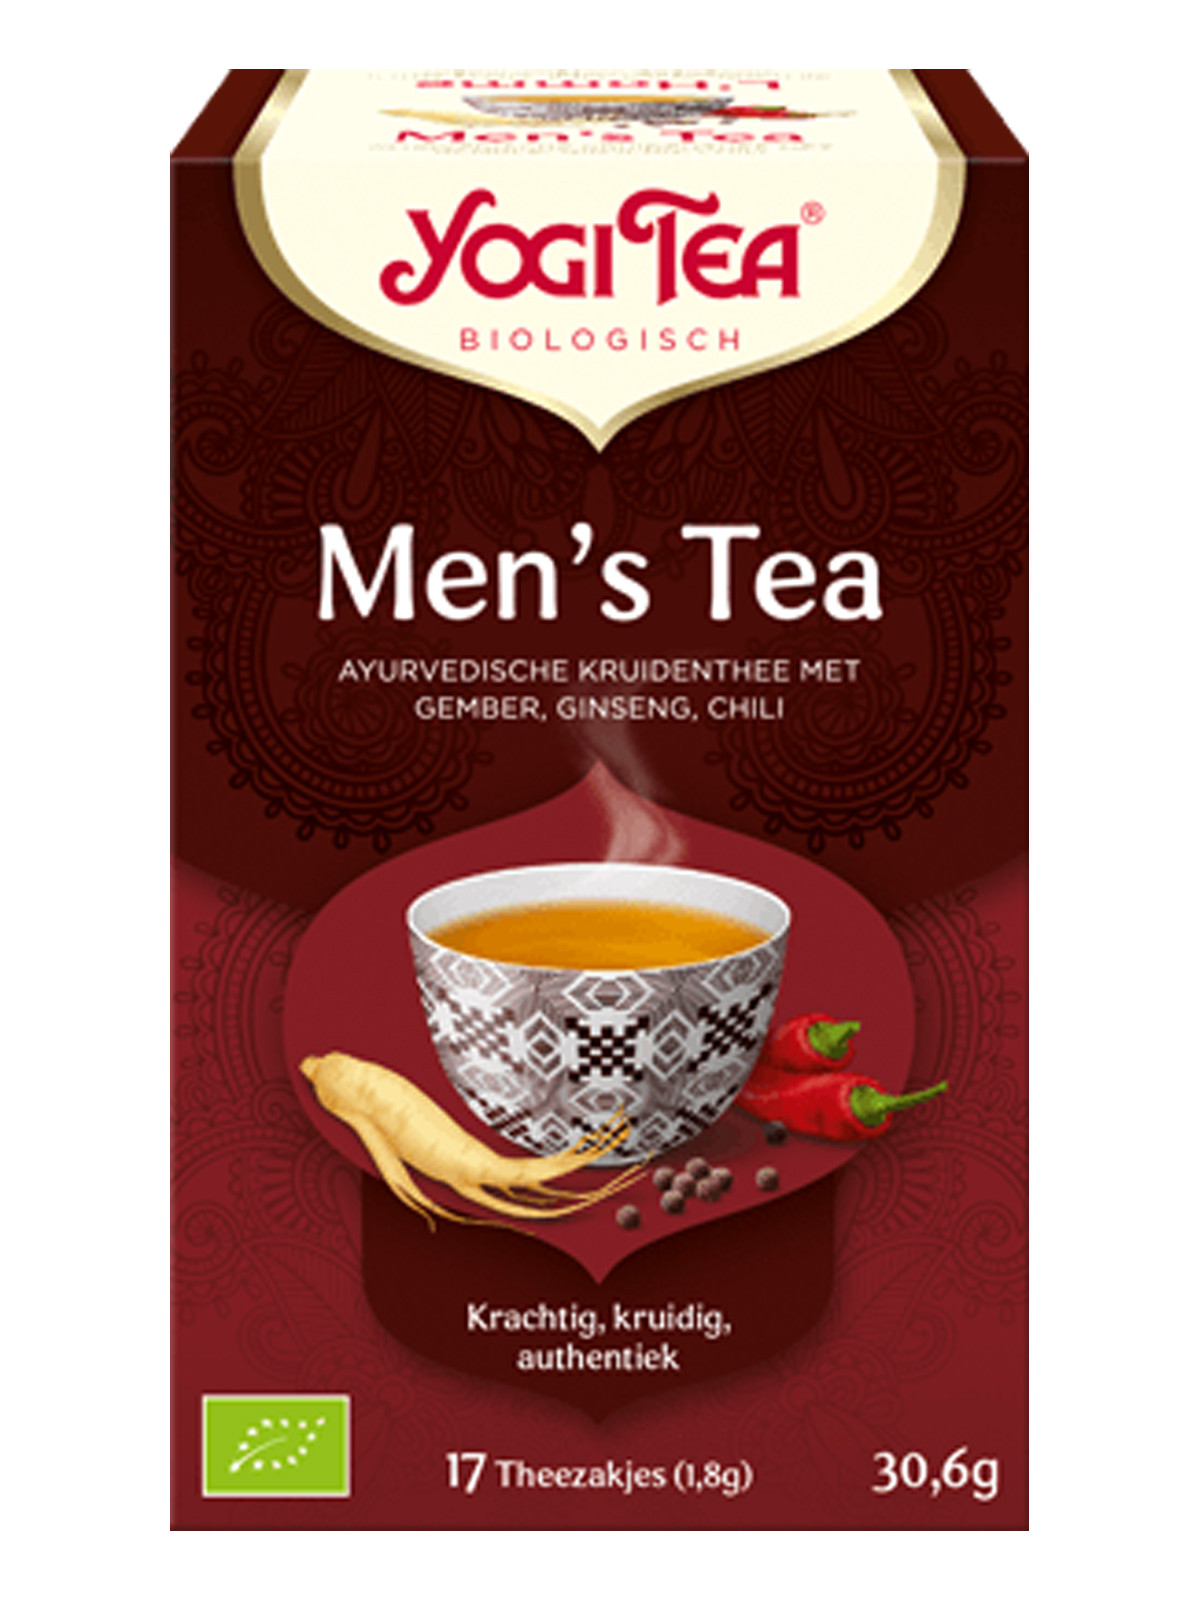 Men's Tea